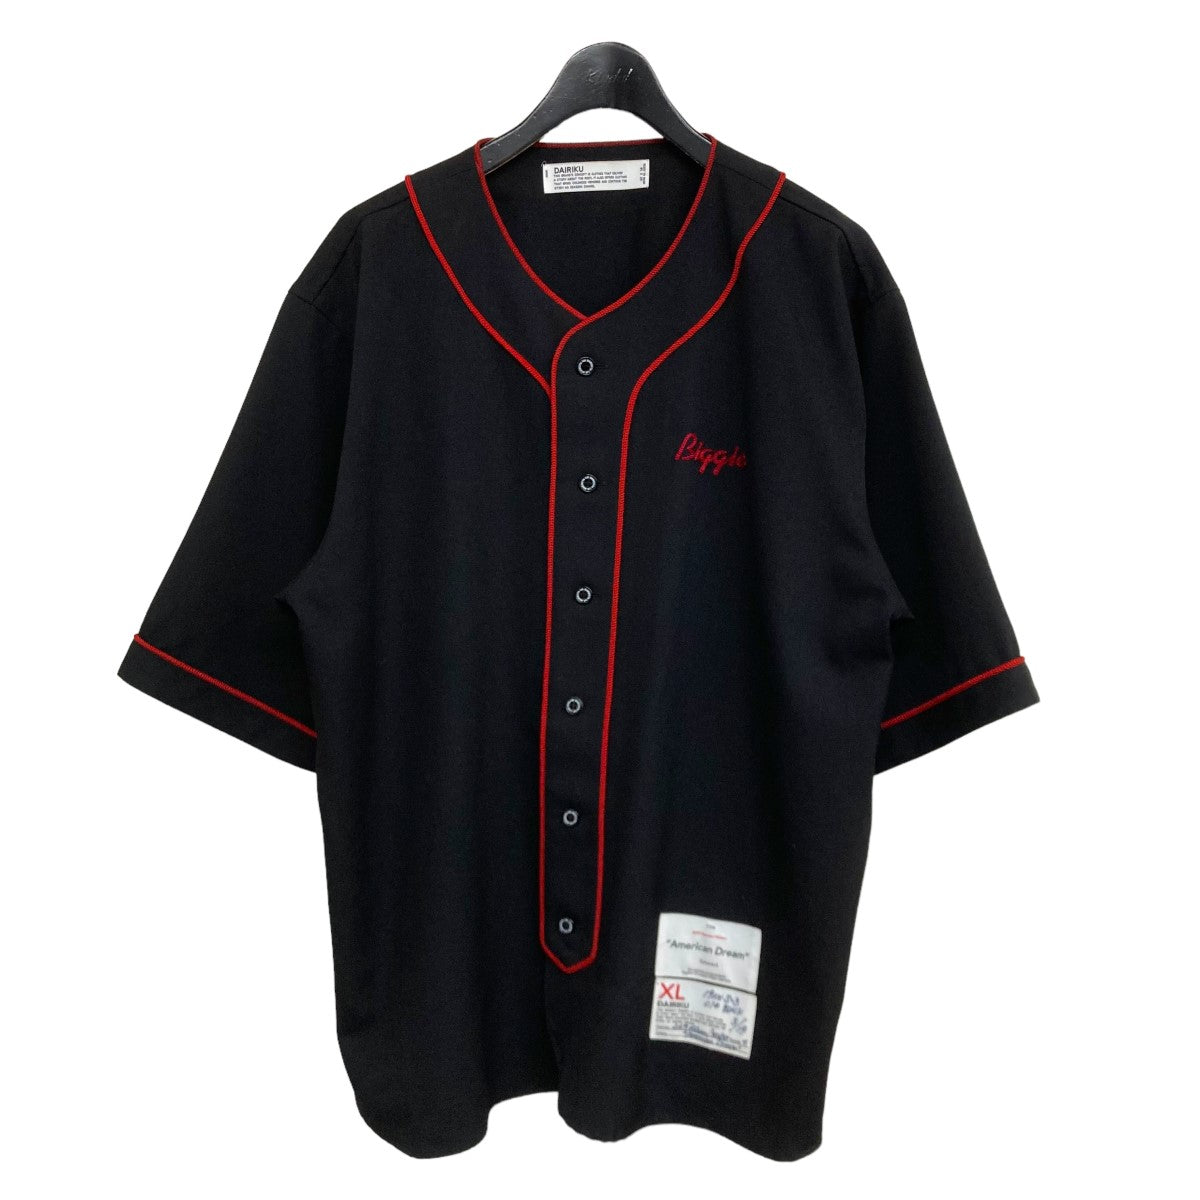 DAIRIKU(ダイリク) 19AWBiggie XL Baseball Shirtベースボールシャツ ...